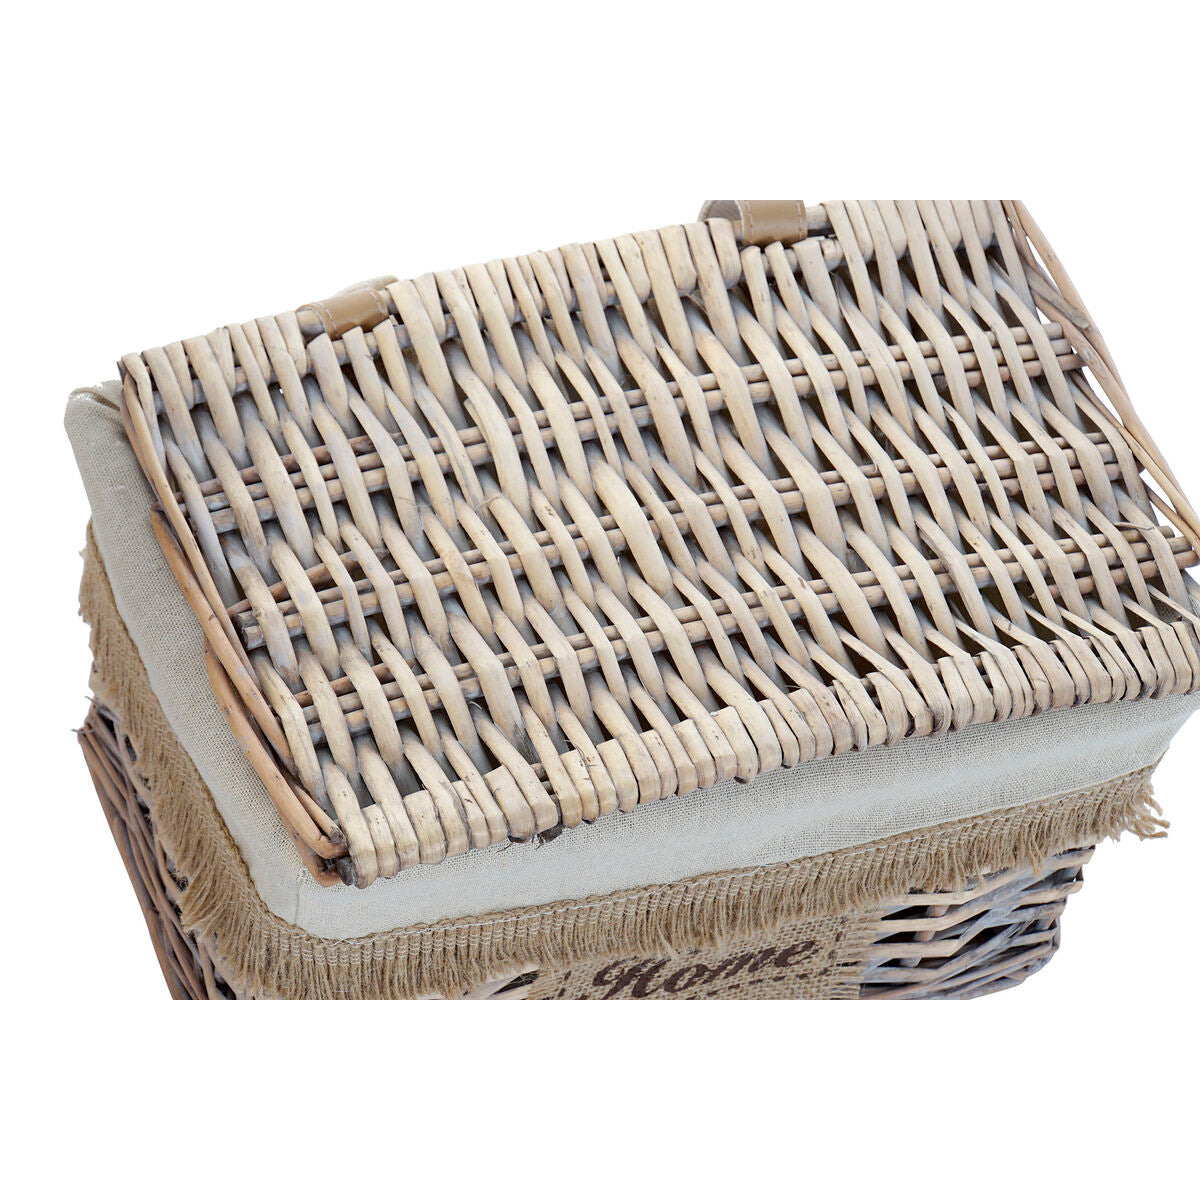 Basket set Home ESPRIT Brown Natural 36 x 27 x 25 cm (2 Pieces)